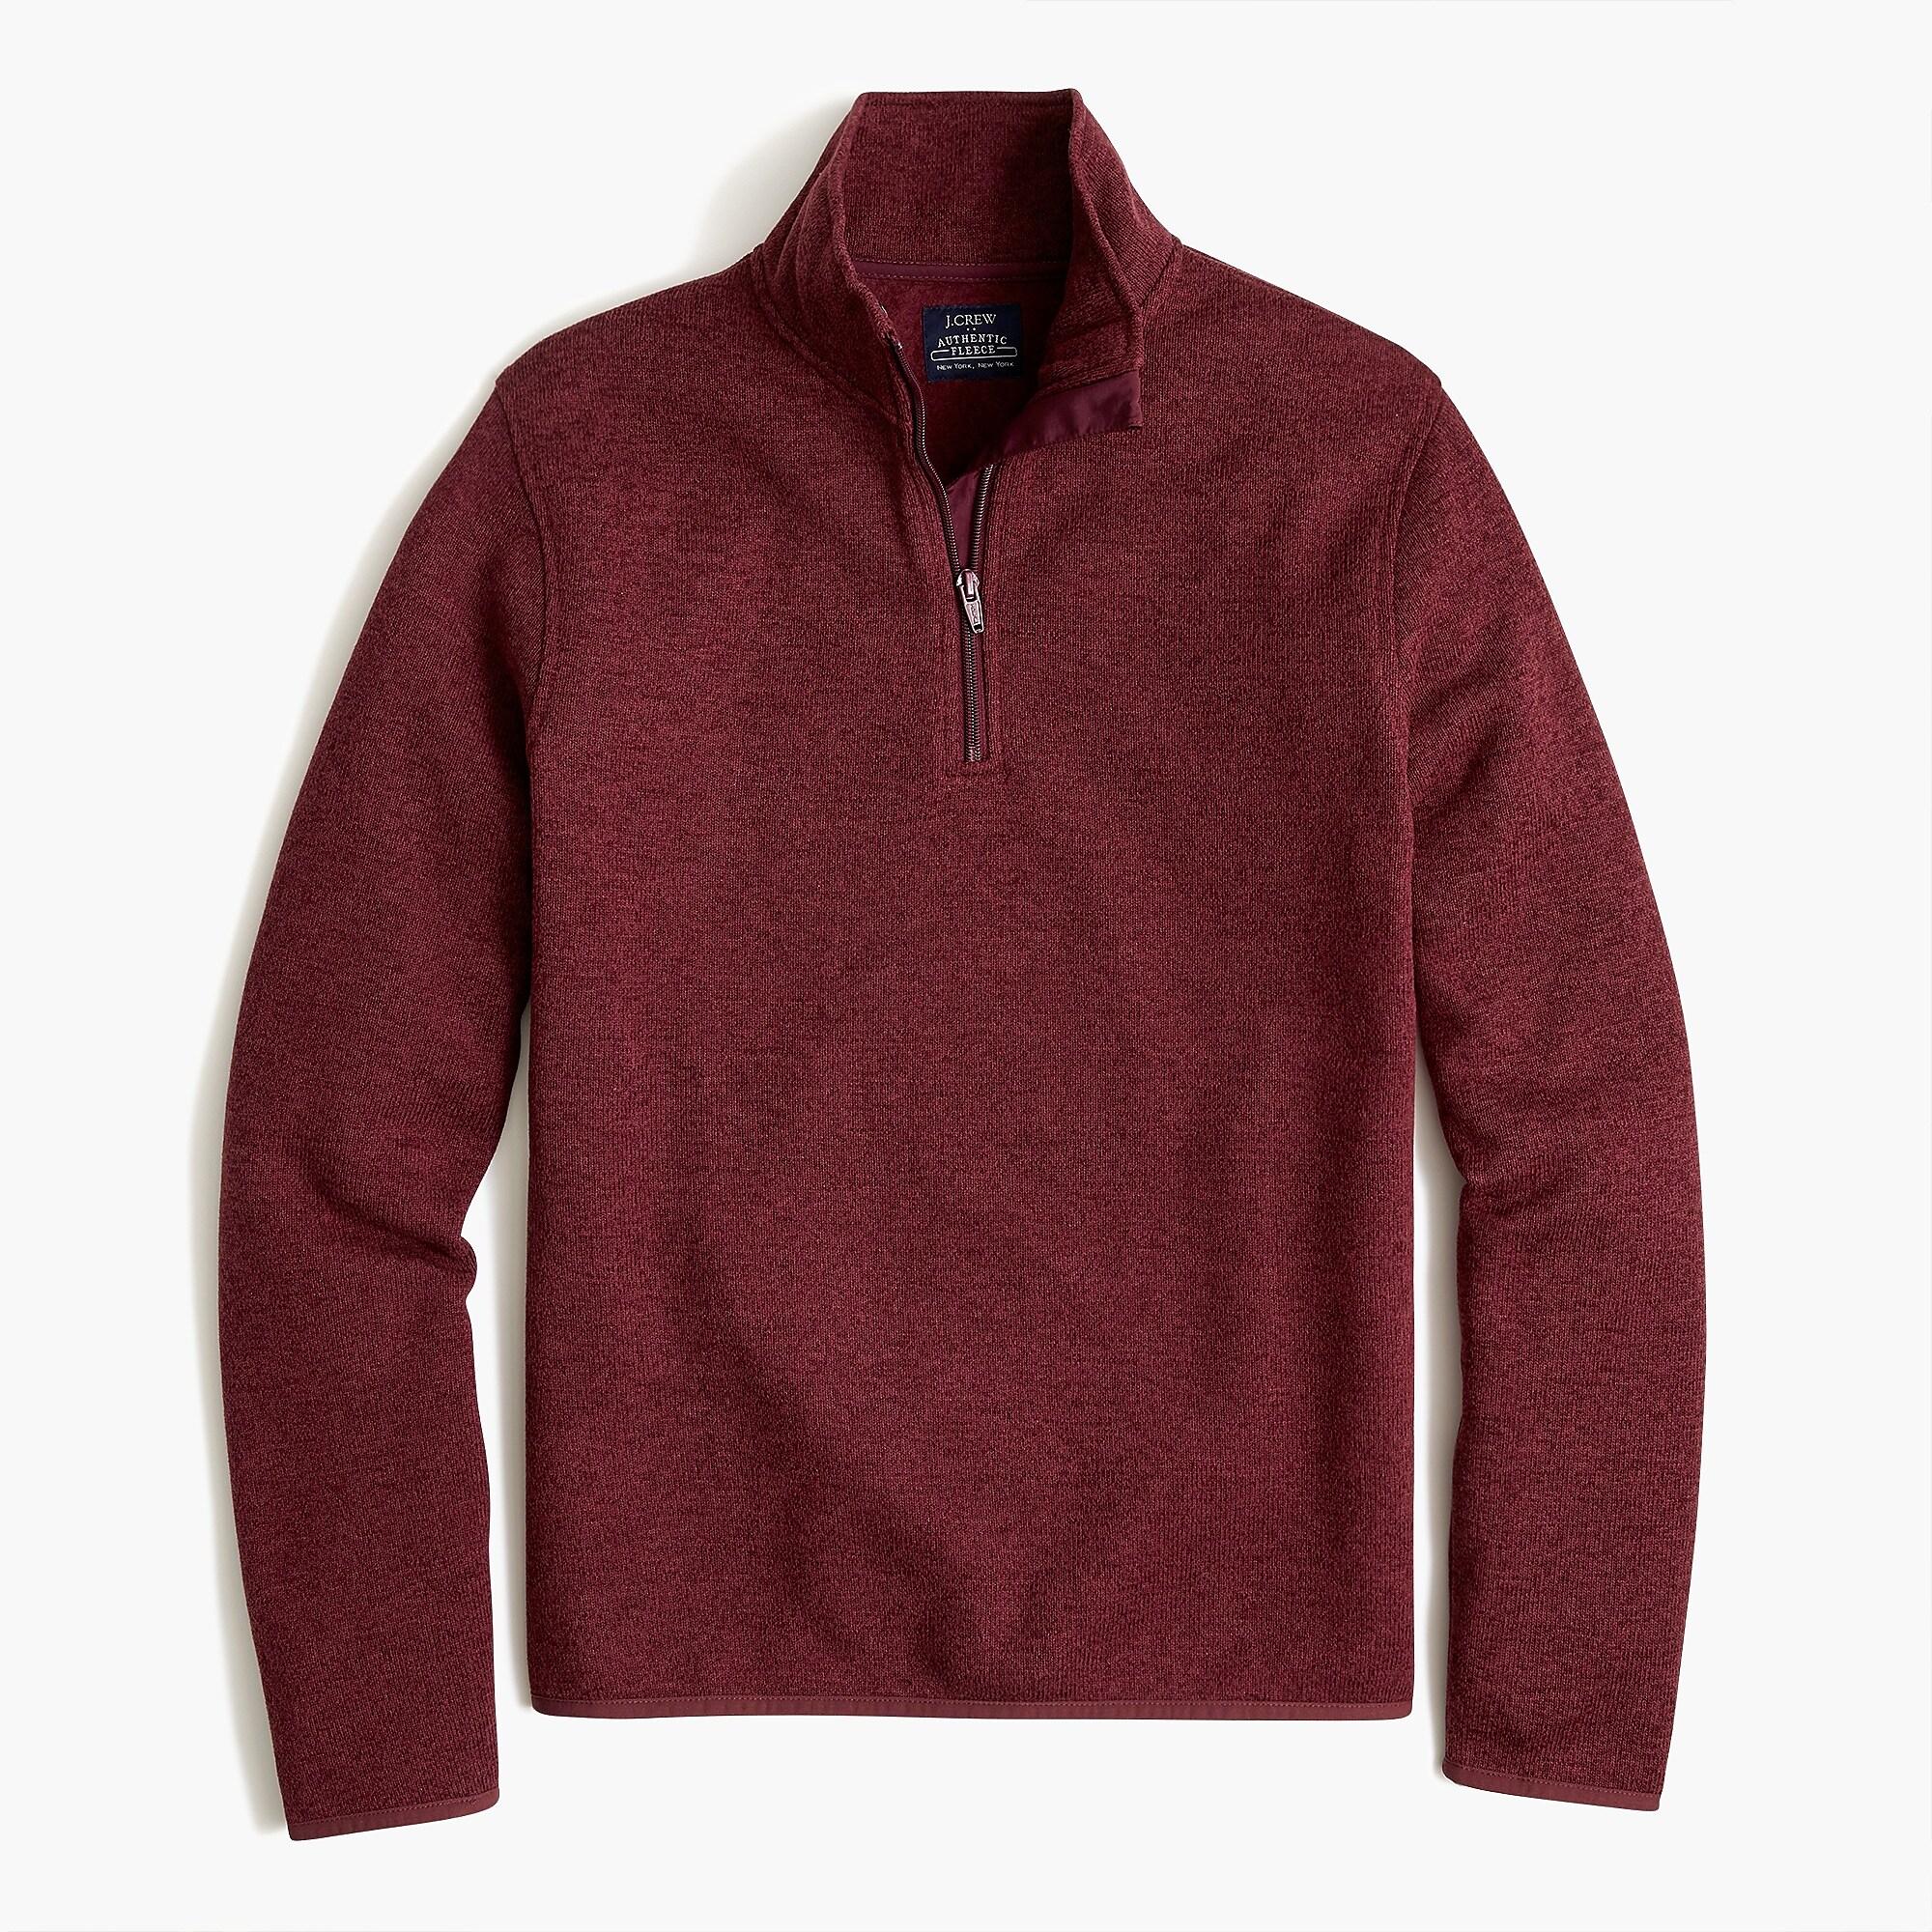 J.Crew Sweater Fleece Half-zip in Heather Bordeaux (Red) for Men - Save ...